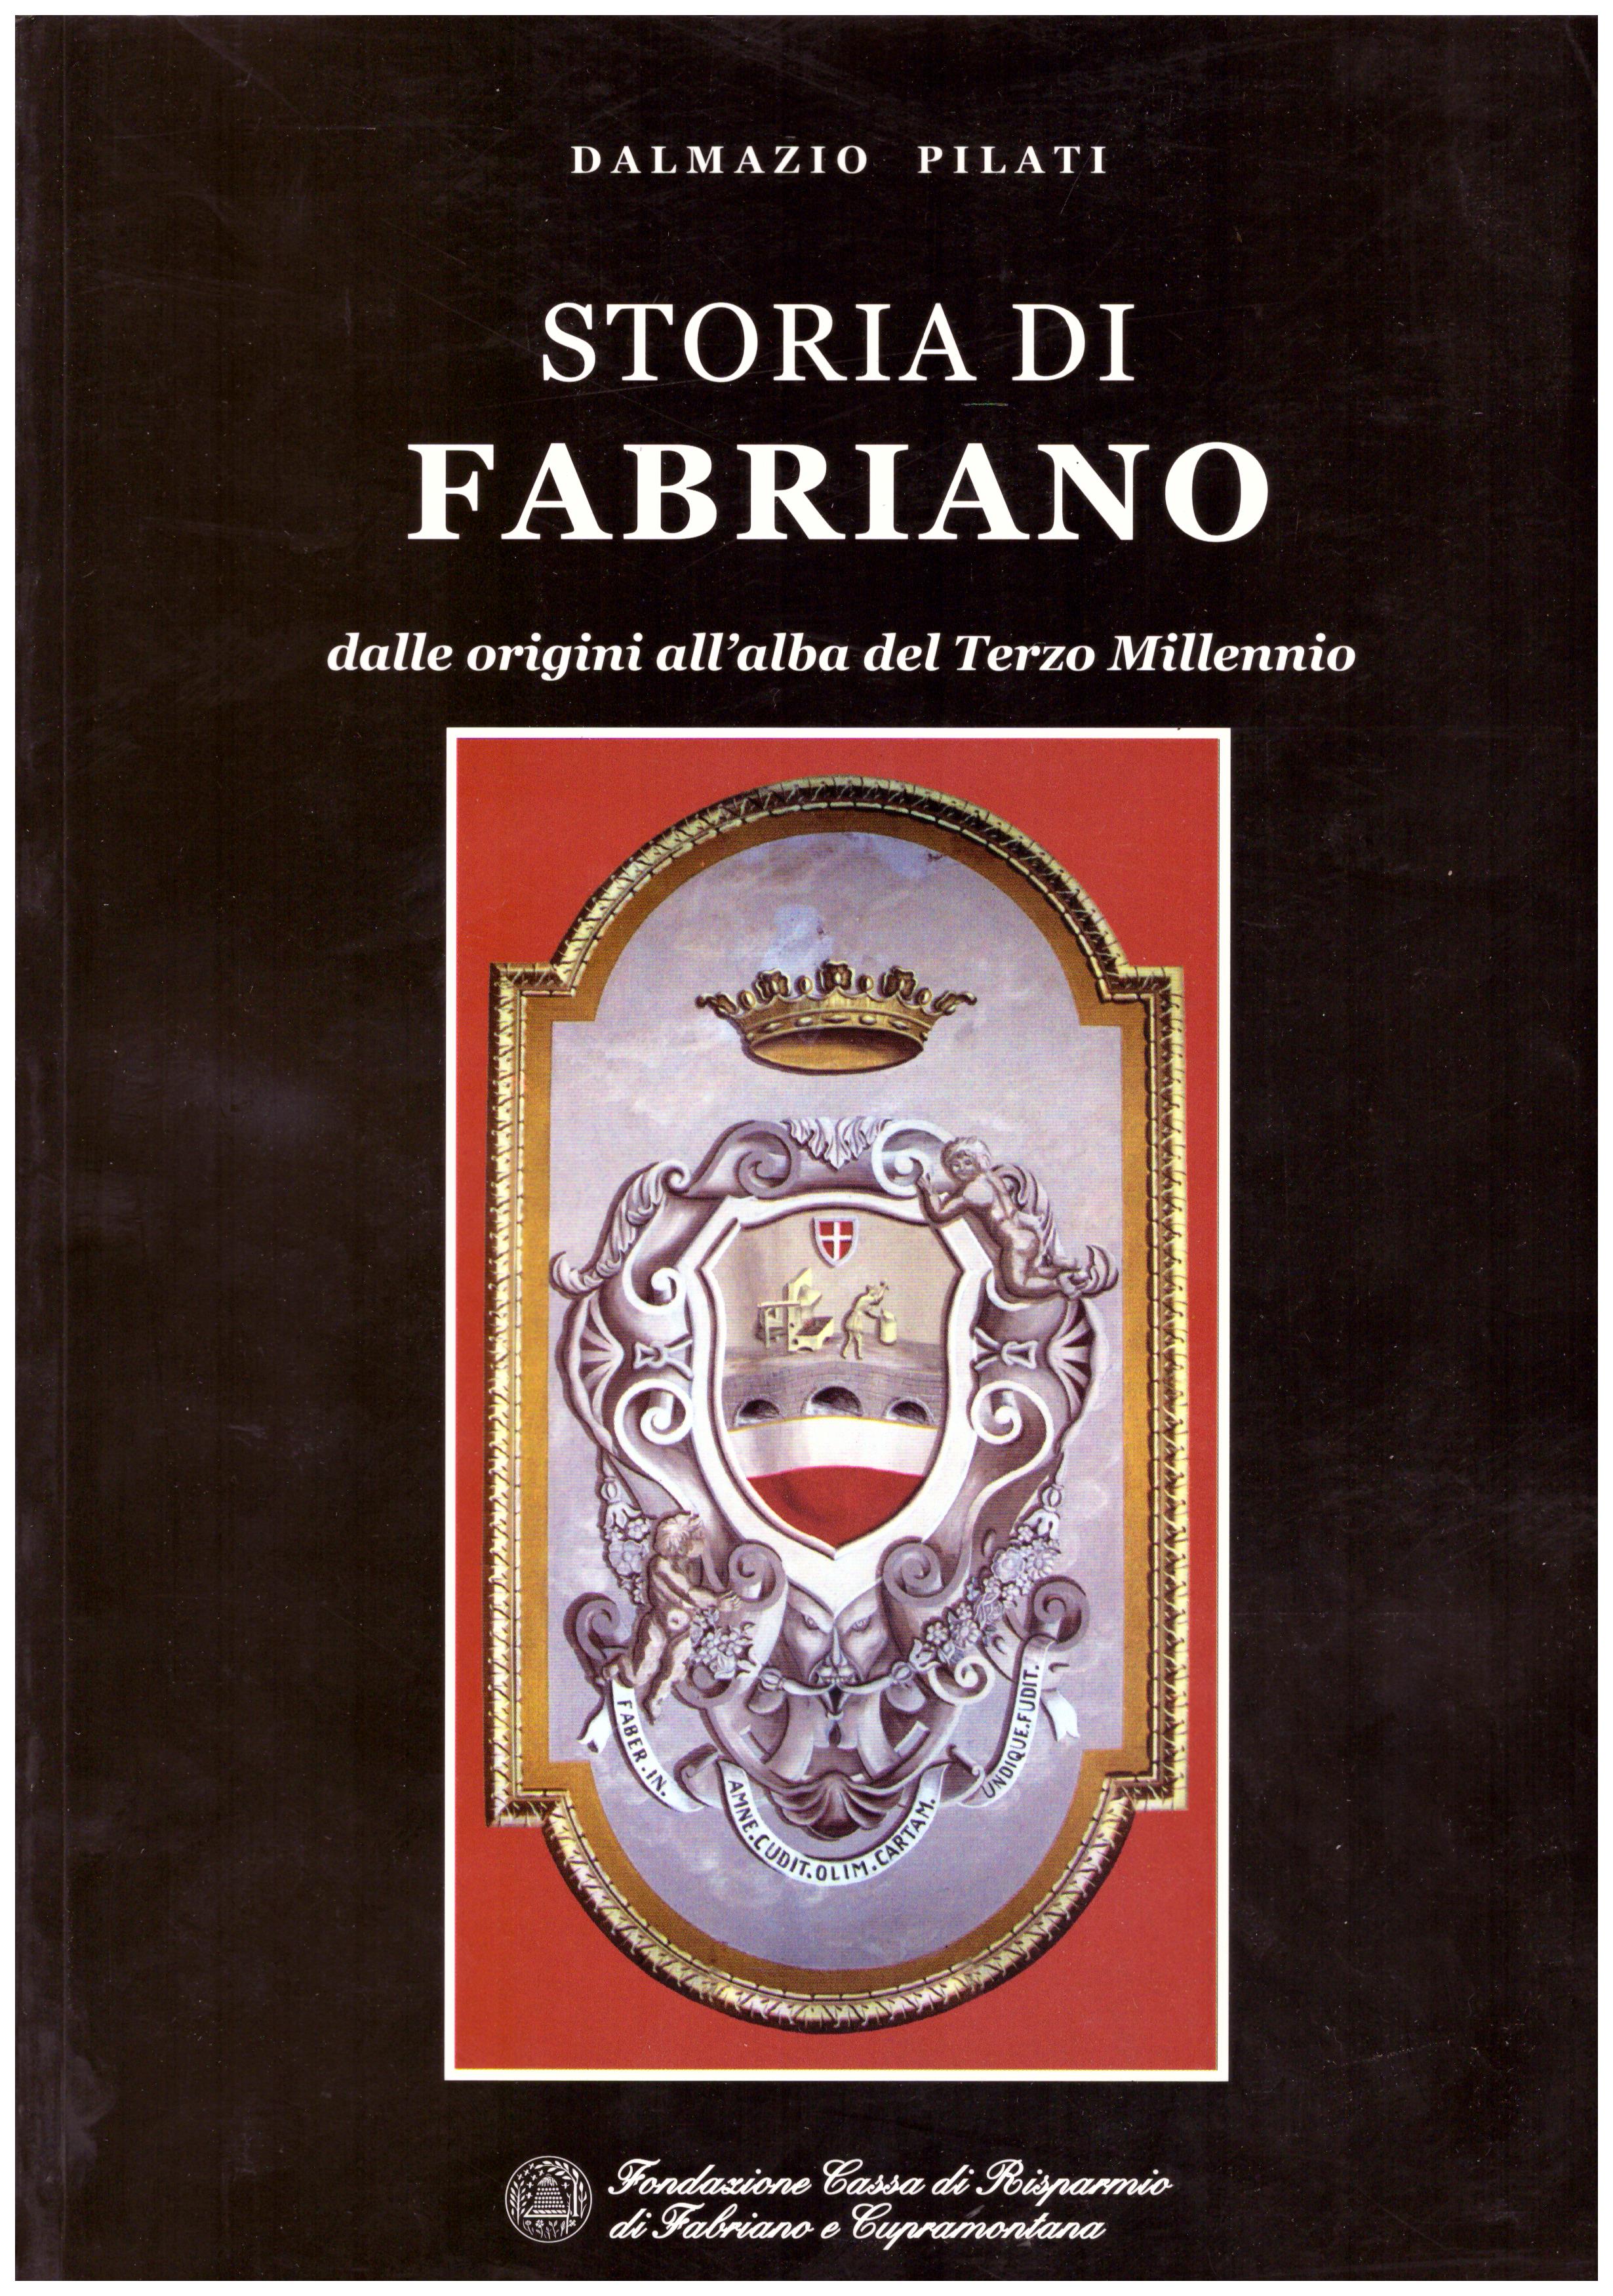 Titolo: Storia di Fabriano     Autore: Dalmazio Pilati    Editore: Fondazione cassa di risparmio di Fabriano e Cupramontana